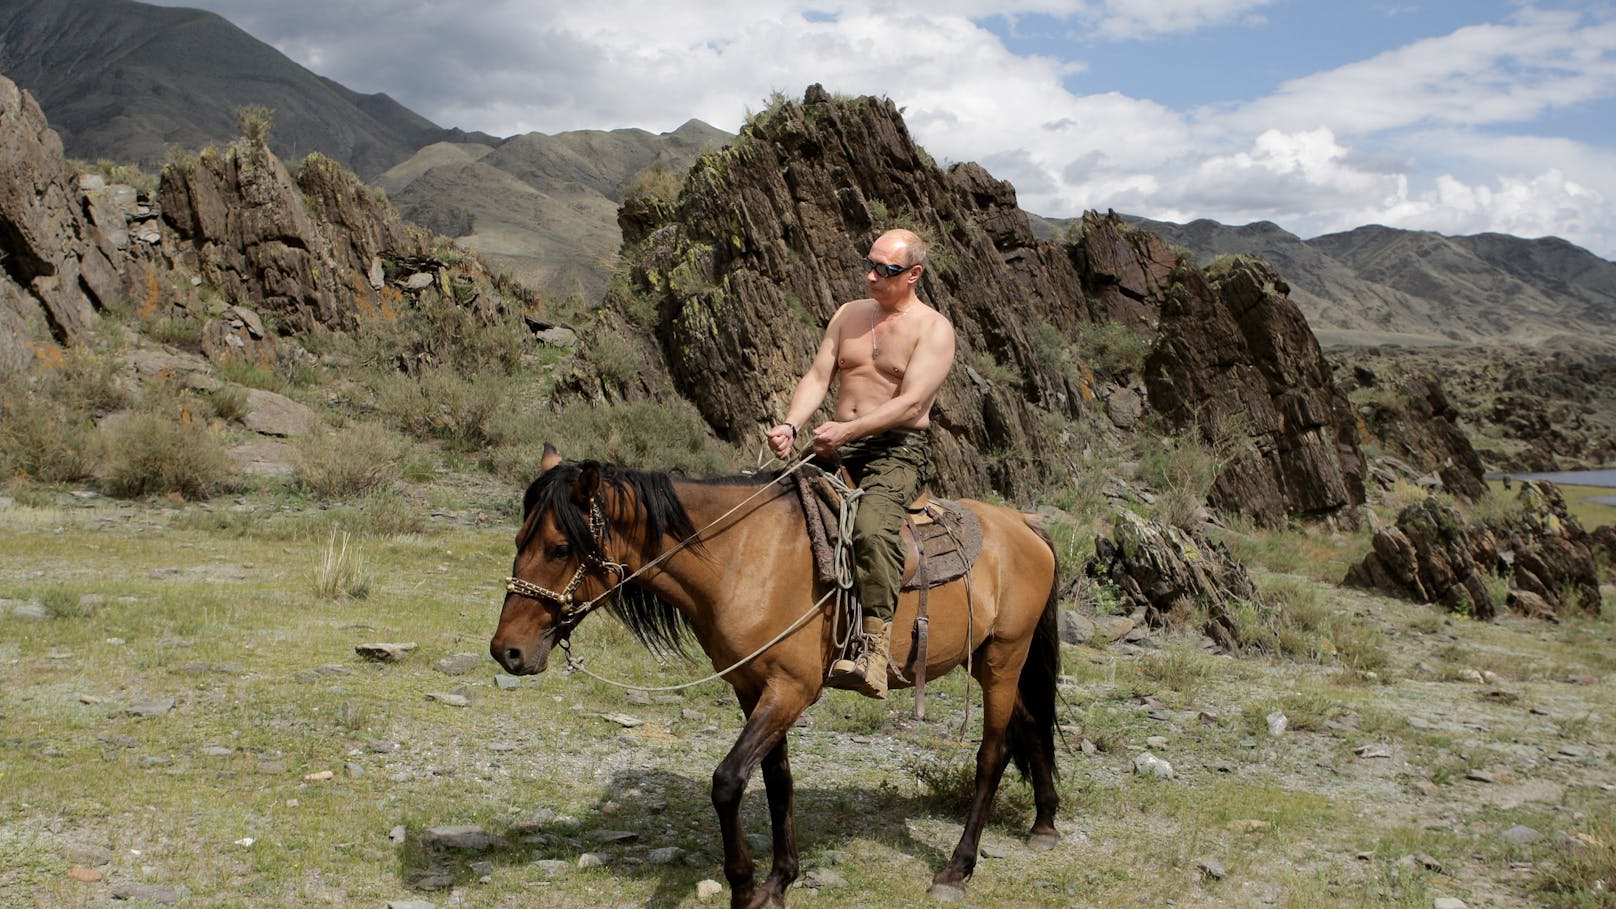 Kein Mann für subtile Botschaften: Russlands Präsident Putin reitet mit nacktem Oberkörper durch Sibirien.